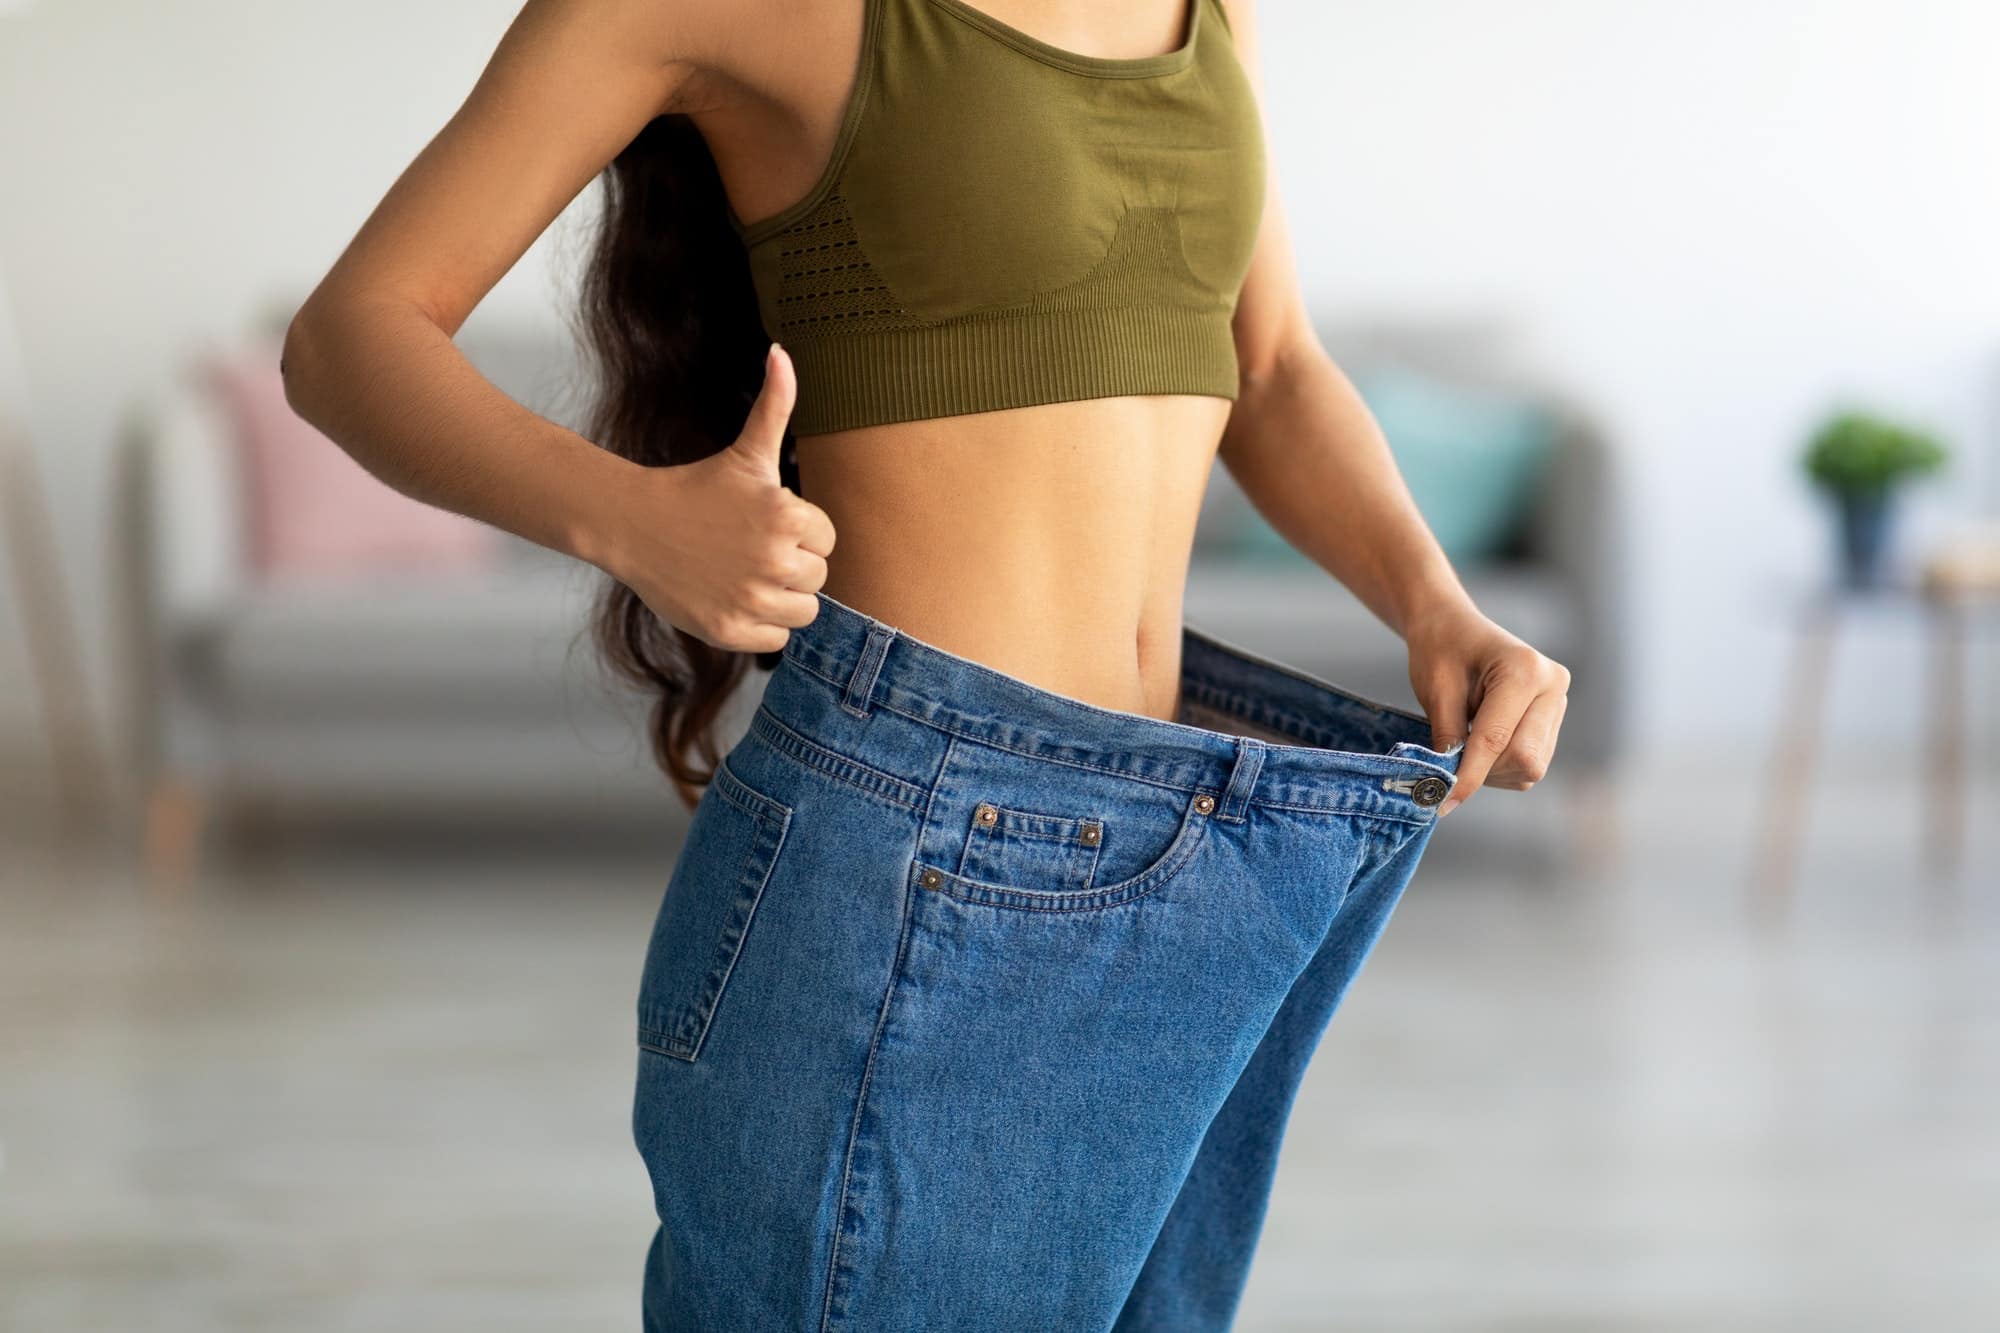 femme dans son ancien jean devenu trop grand après avoir perdu du poids